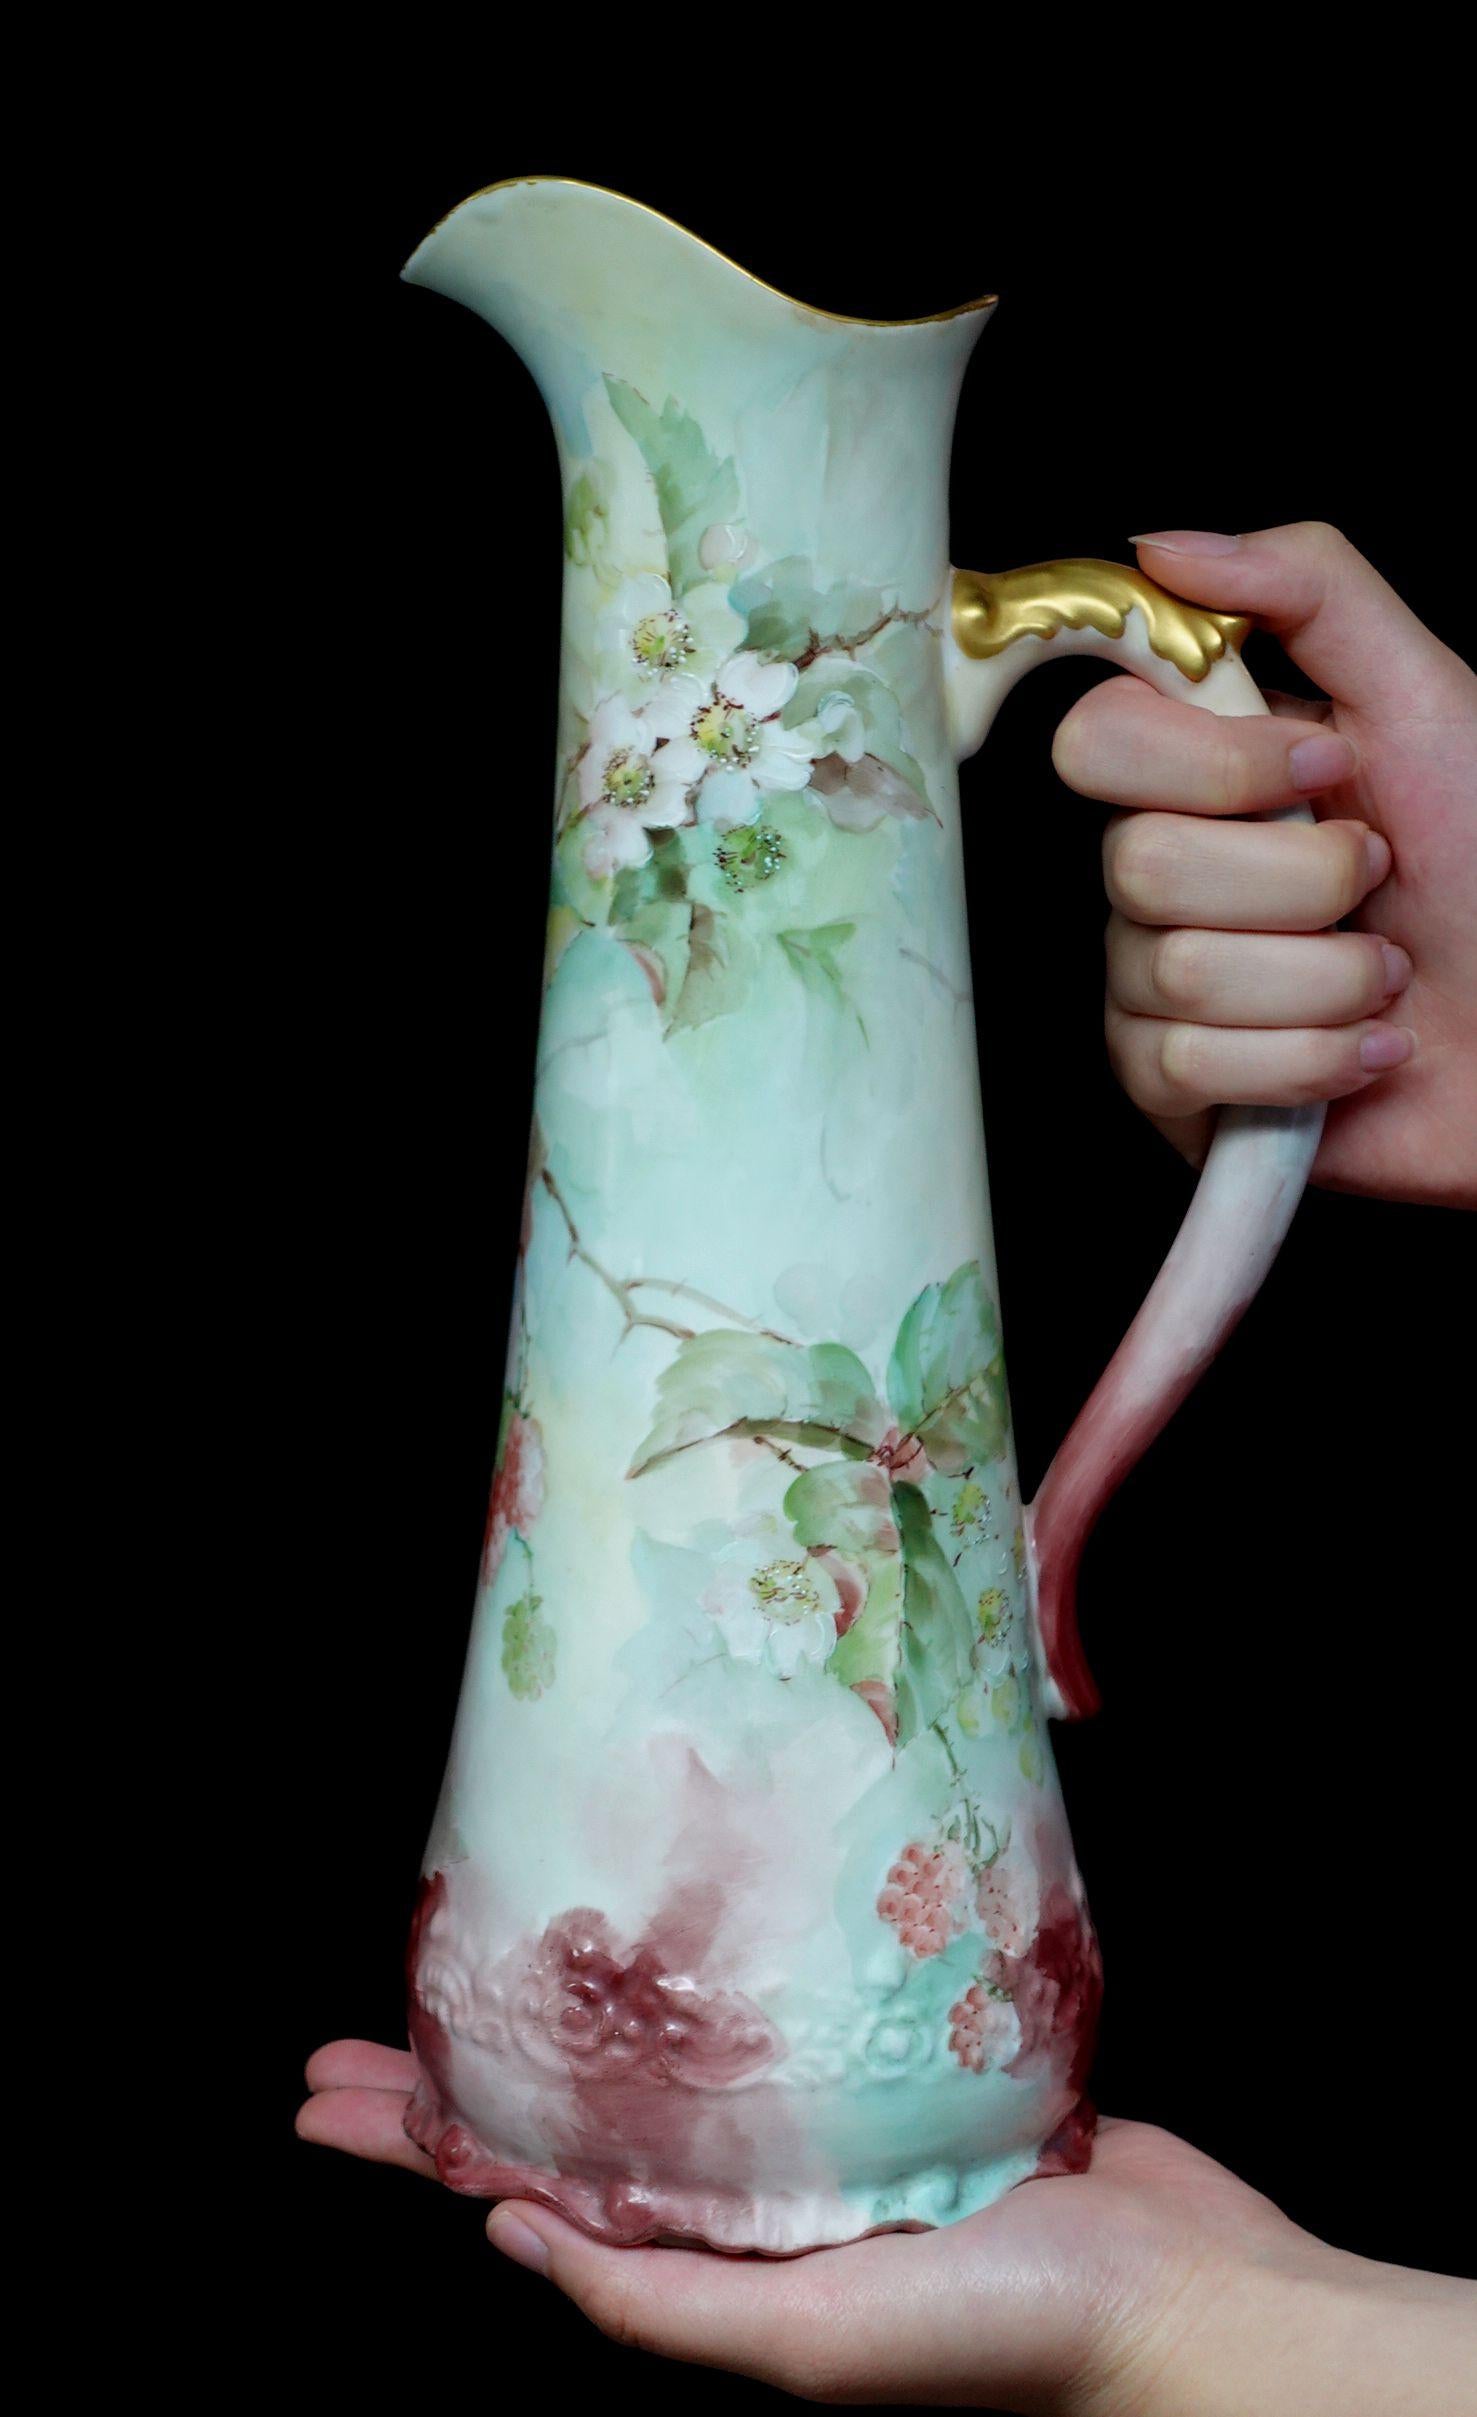 Une merveilleuse grande antiquité A.K. La chope décorée de fleurs en porcelaine française offre un bord en forme de courbe absolument 100% peint à la main de raisins en fleur blanche, brun-rouge, pourpre, et de riches feuilles vertes, arrangement